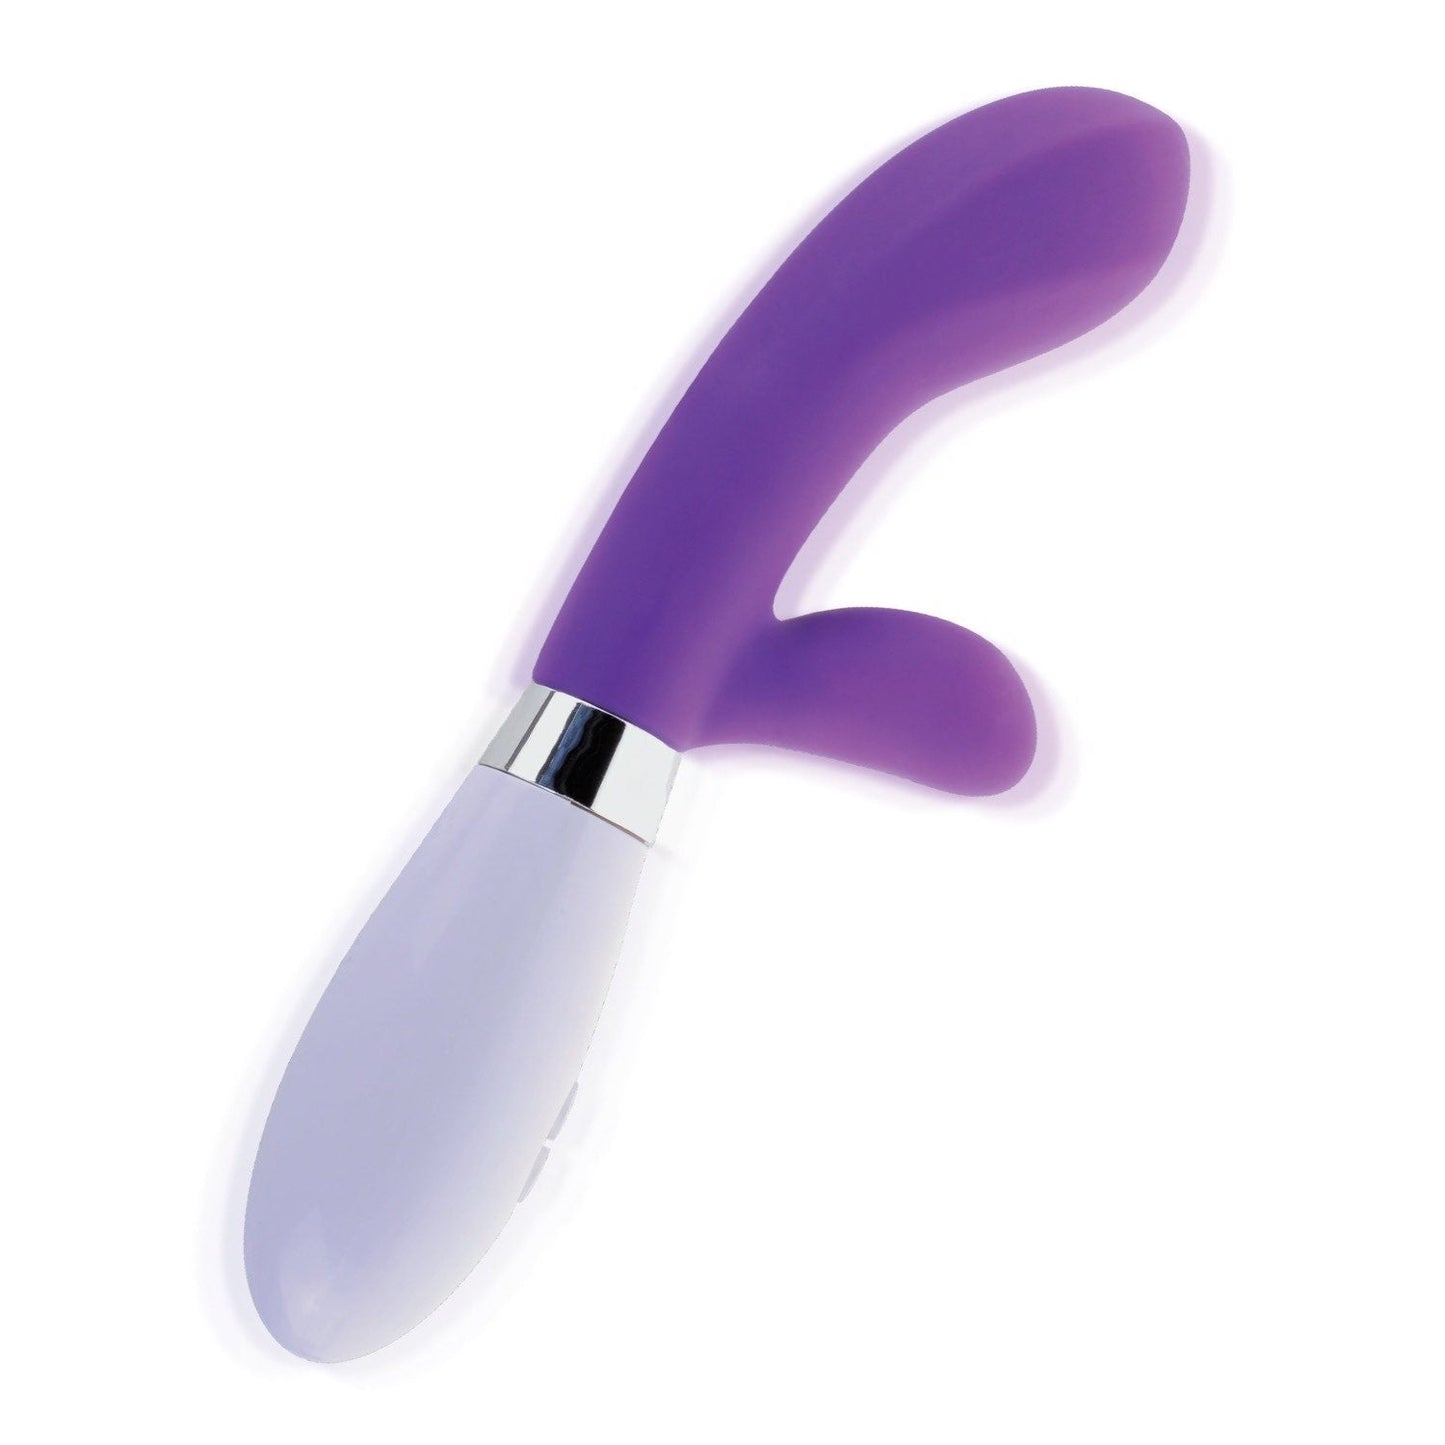 硅胶 G 点兔子 - 紫色 20.3 厘米（8 英寸）兔子振动器